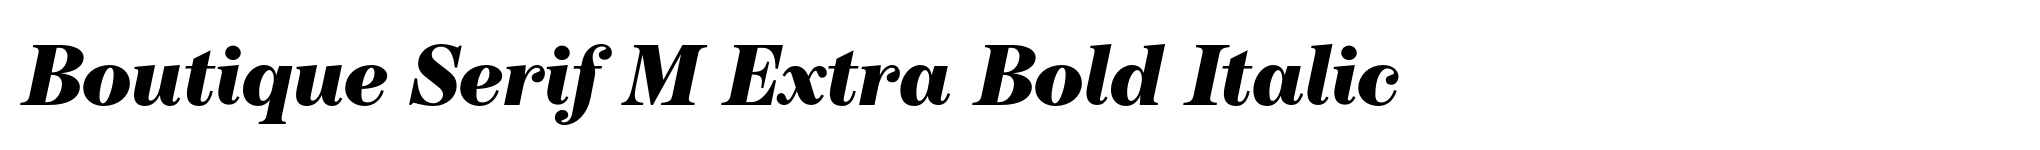 Boutique Serif M Extra Bold Italic image